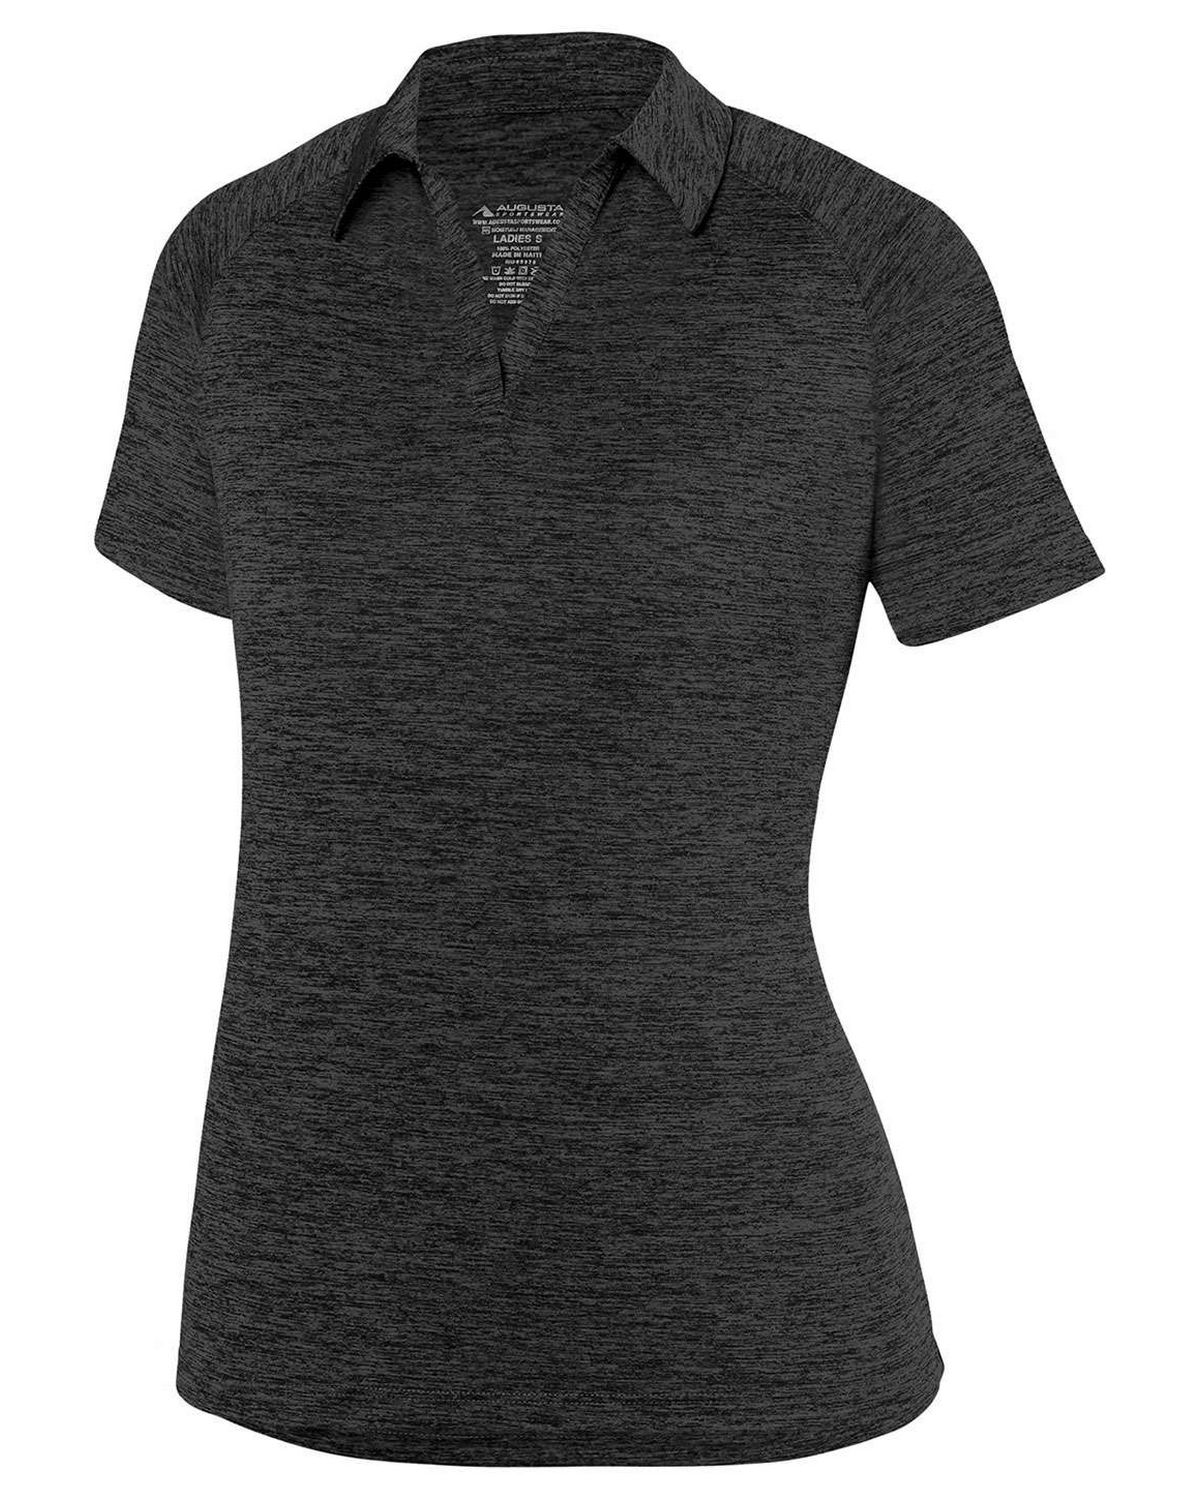 Augusta Sportswear 5409 Women's Intensify Black Heather Sport T-Shirt